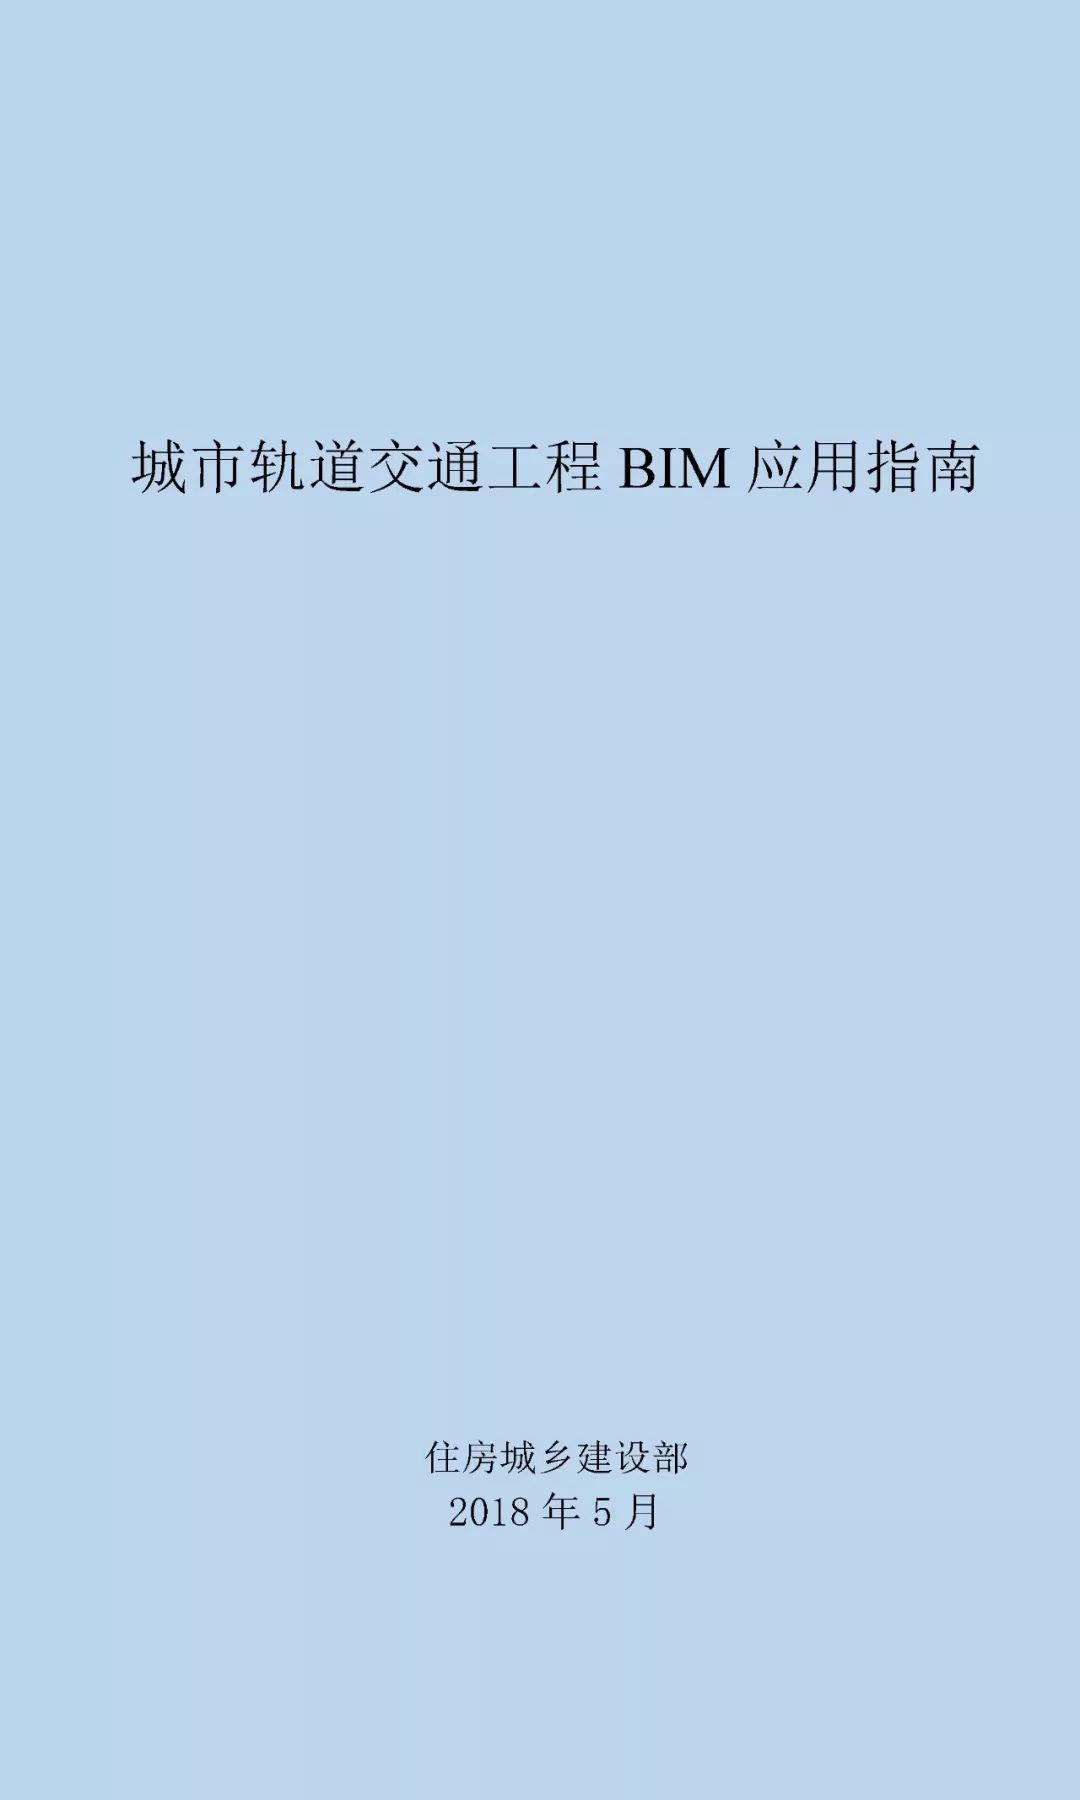 住建部下发《印发城市轨道交通工程BIM应用指南》